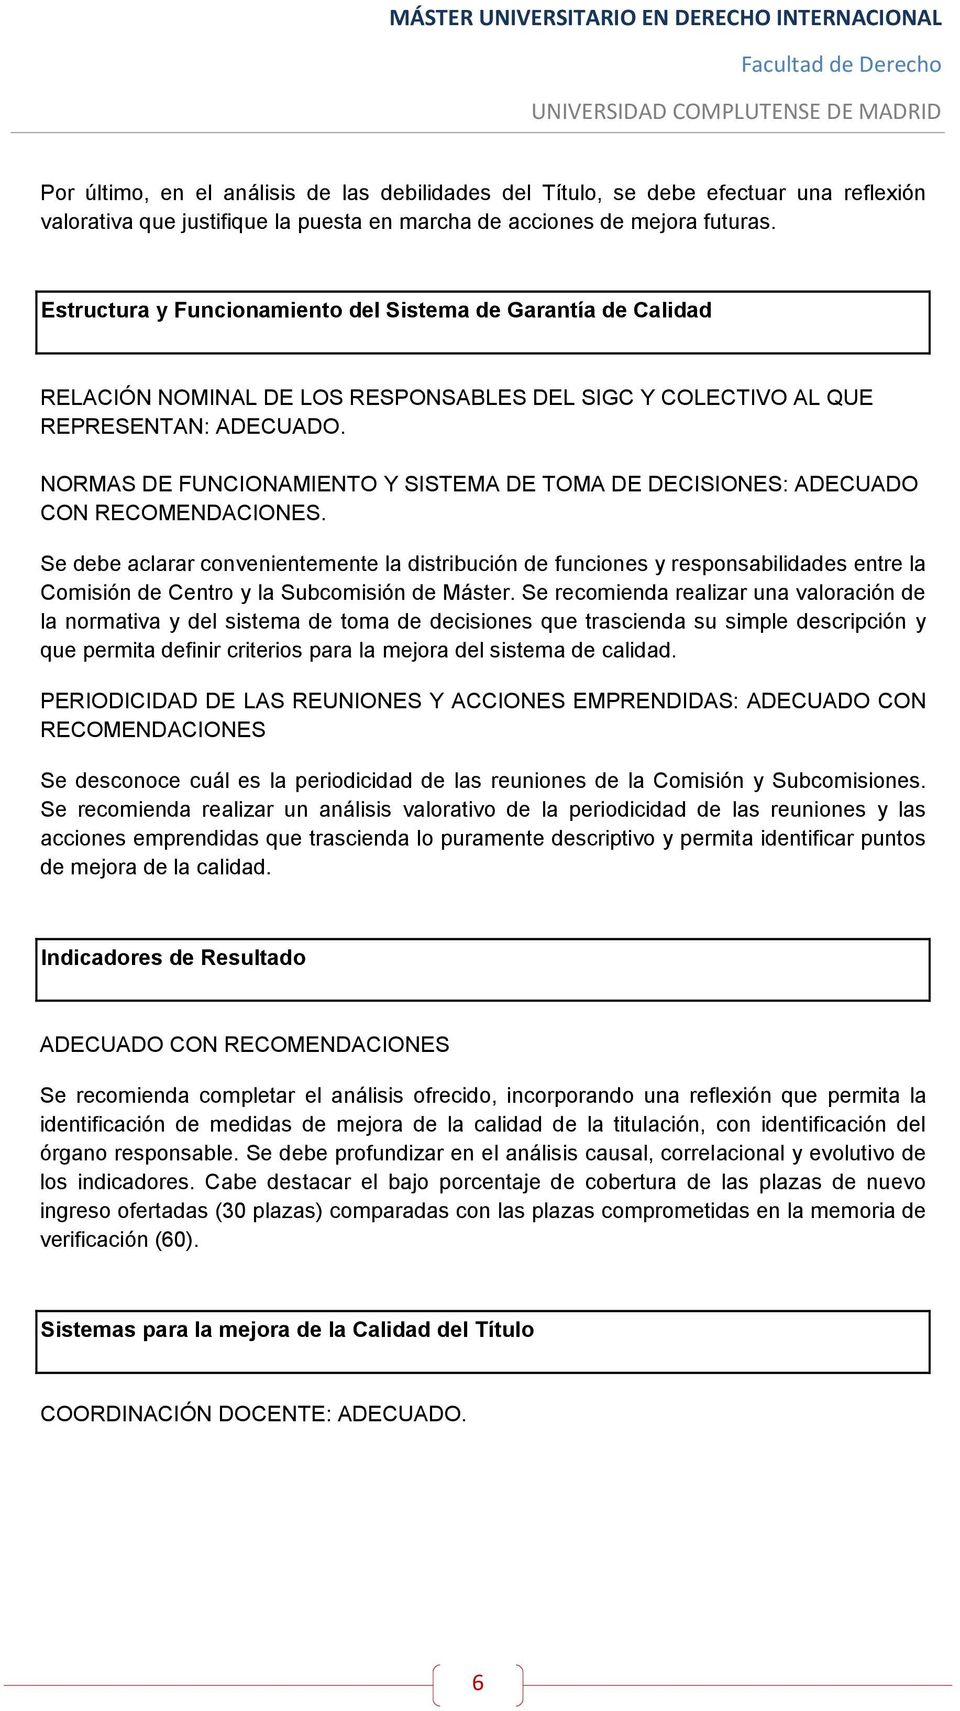 NORMAS DE FUNCIONAMIENTO Y SISTEMA DE TOMA DE DECISIONES: ADECUADO CON RECOMENDACIONES.